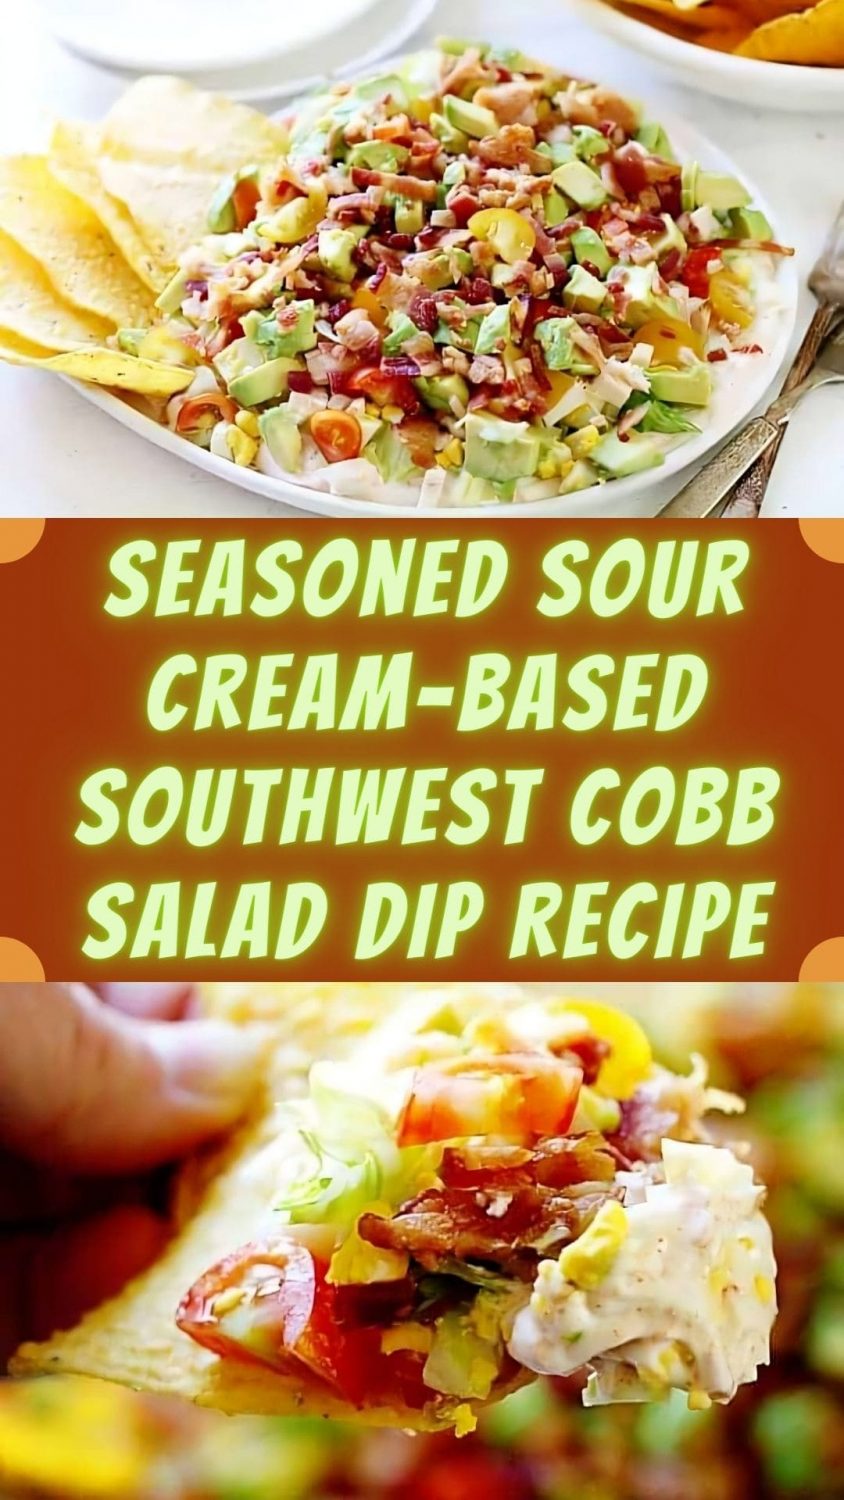 Seasoned Sour Cream-Based Southwest Cobb Salad Dip Recipe